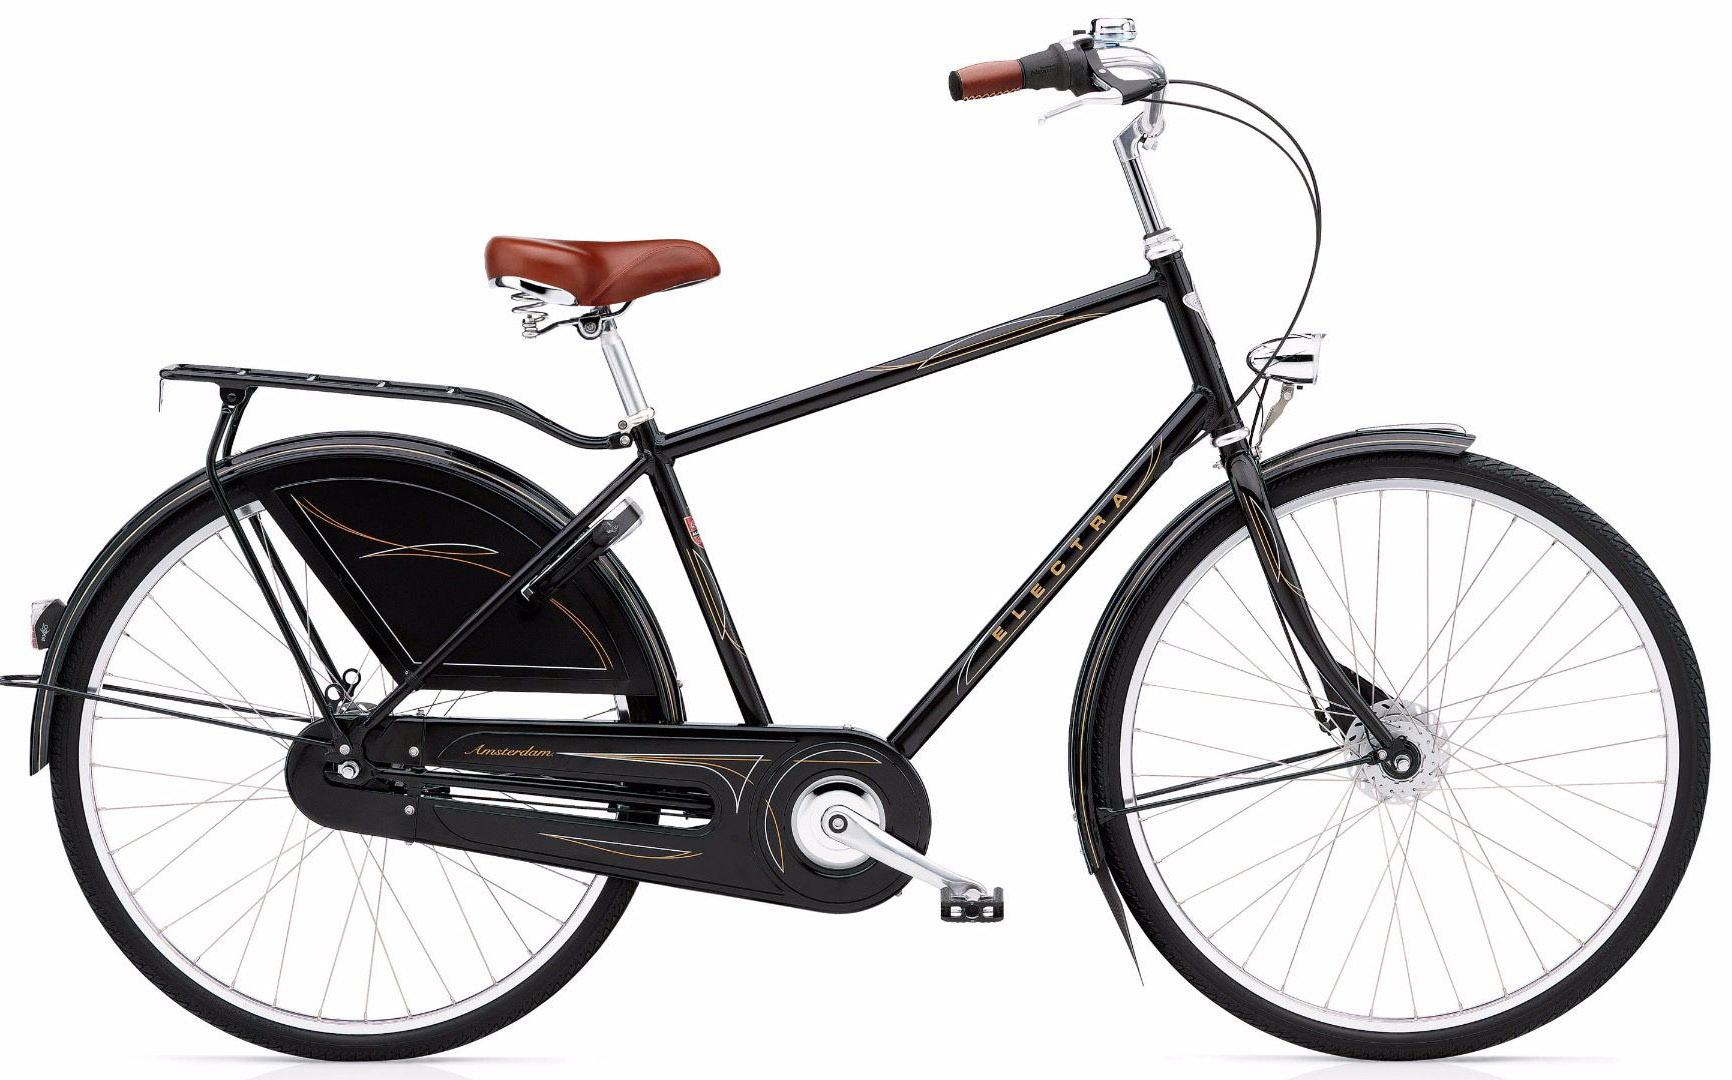  Отзывы о Городском велосипеде Electra Amsterdam Royal 8i Mens 2020